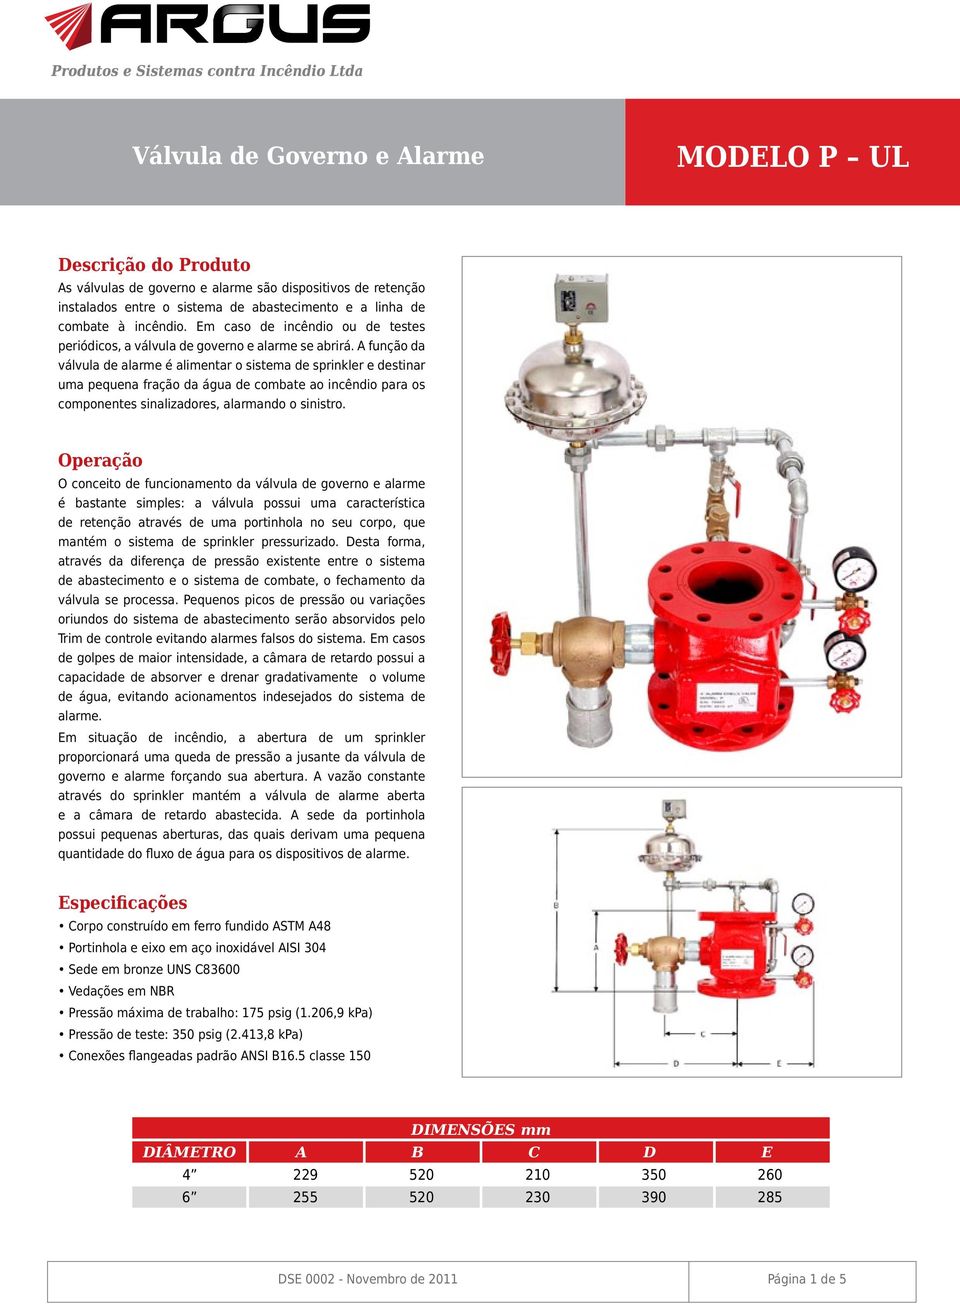 A função da válvula de alarme é alimentar o sistema de sprinkler e destinar uma pequena fração da água de combate ao incêndio para os componentes sinalizadores, alarmando o sinistro.